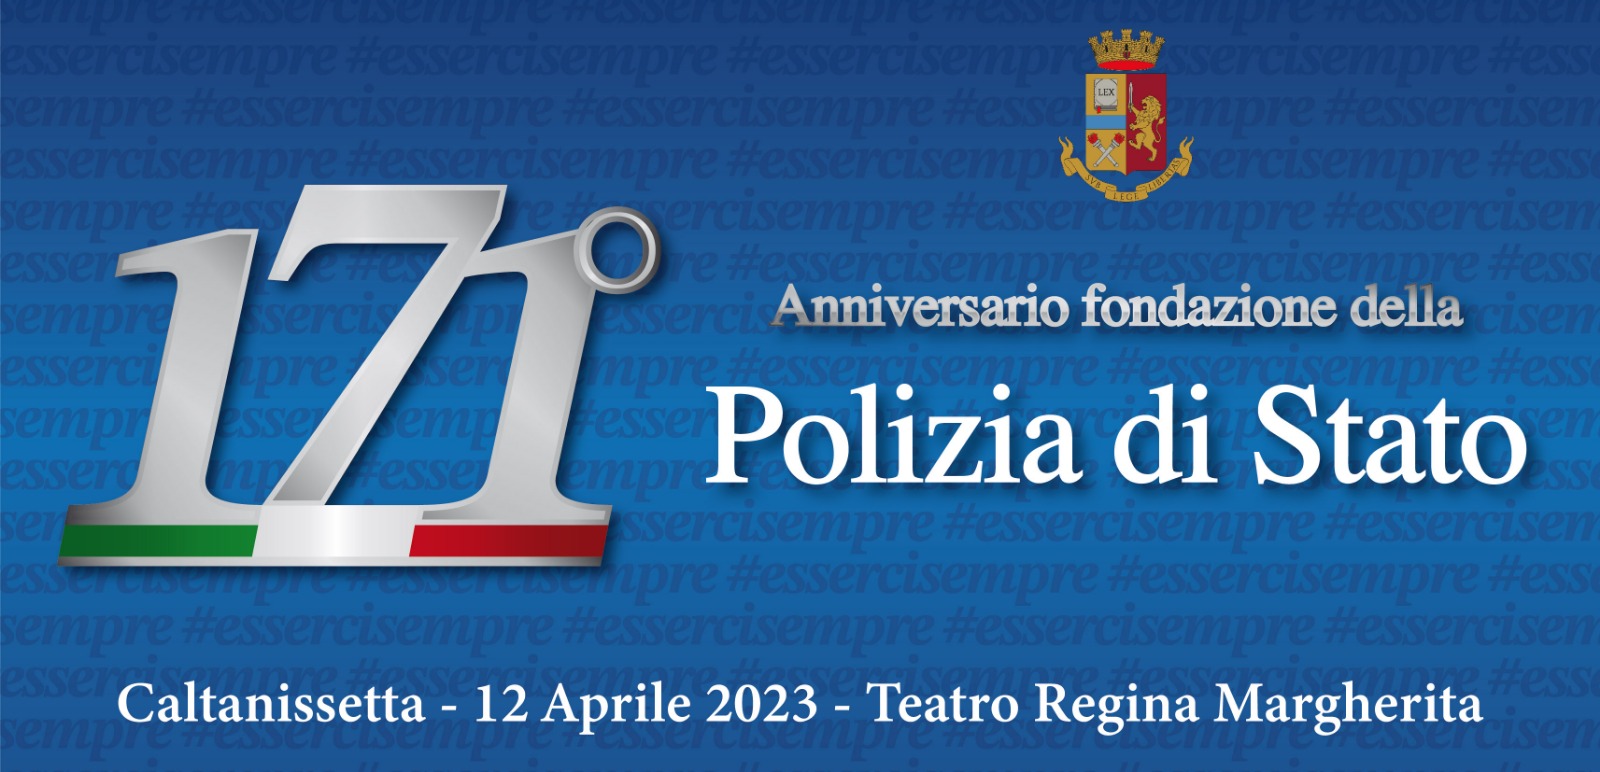 Caltanissetta, 171° Anniversario della fondazione della Polizia: i risultati di un anno di attività istituzionale.